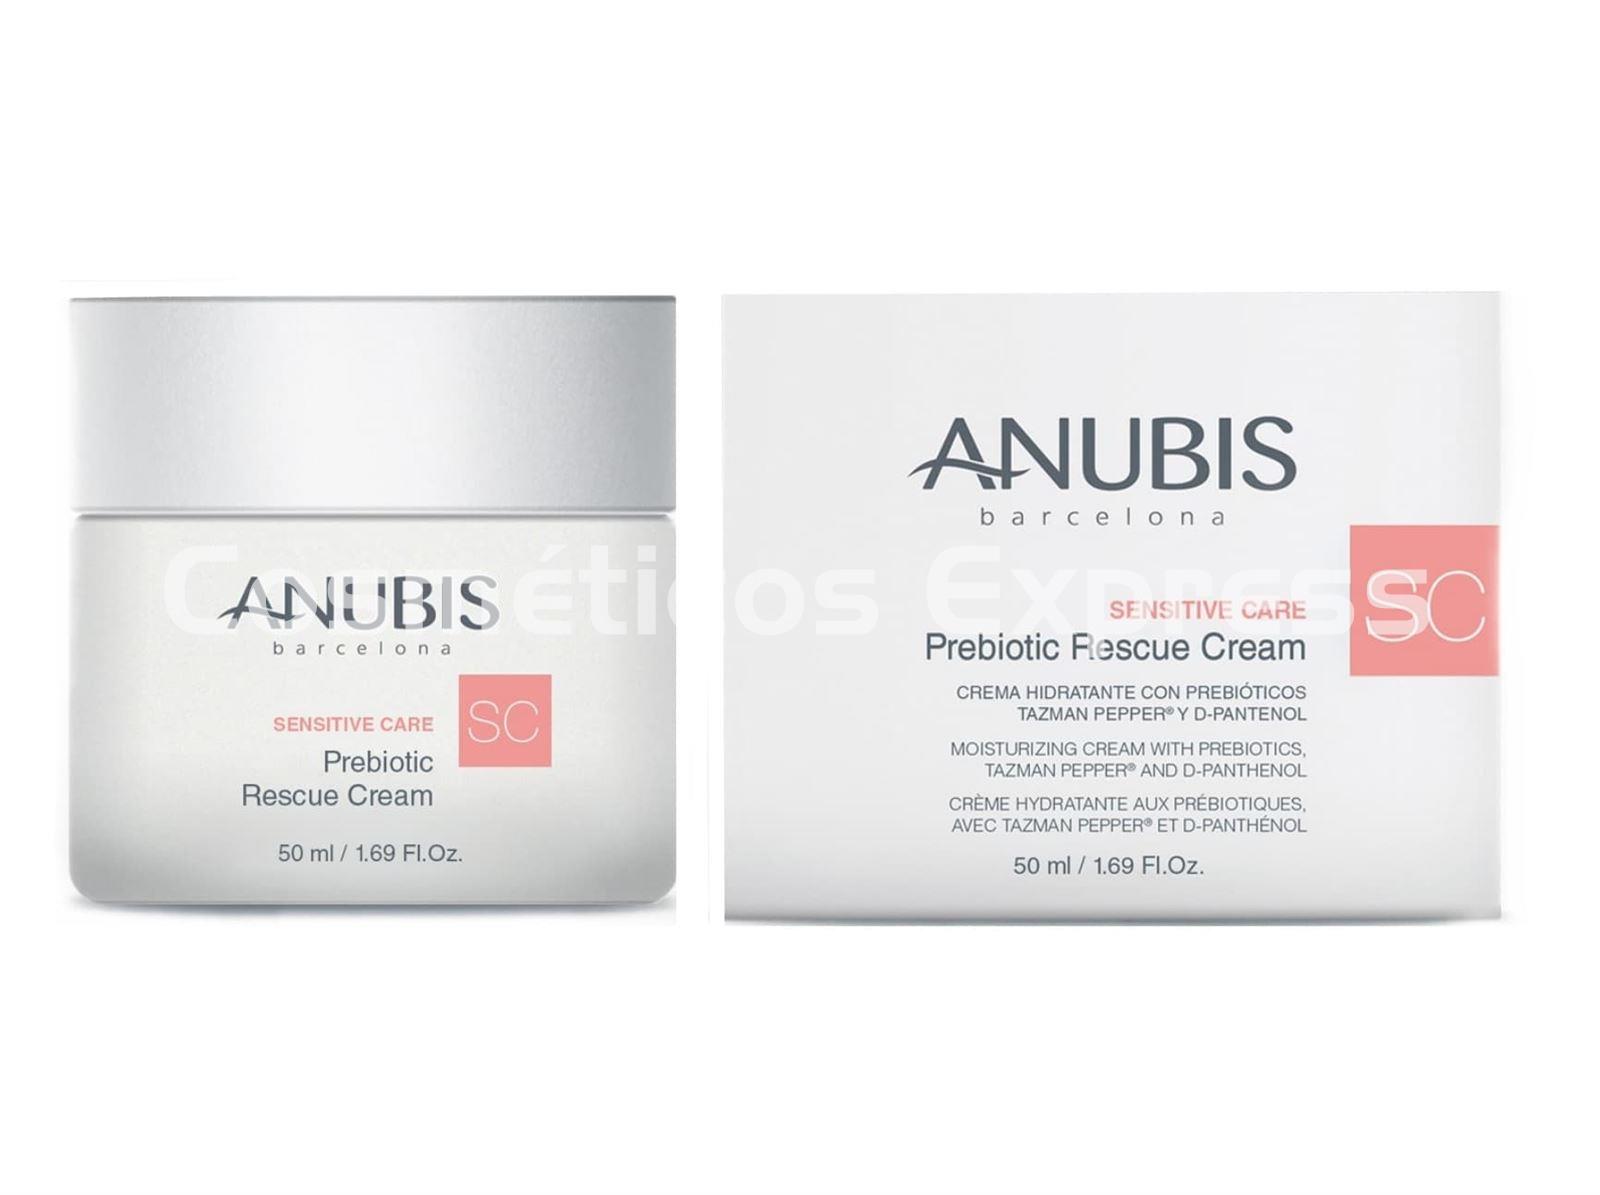 Anubis Prebiotic Rescue Cream Sensitive Care - Imagen 1